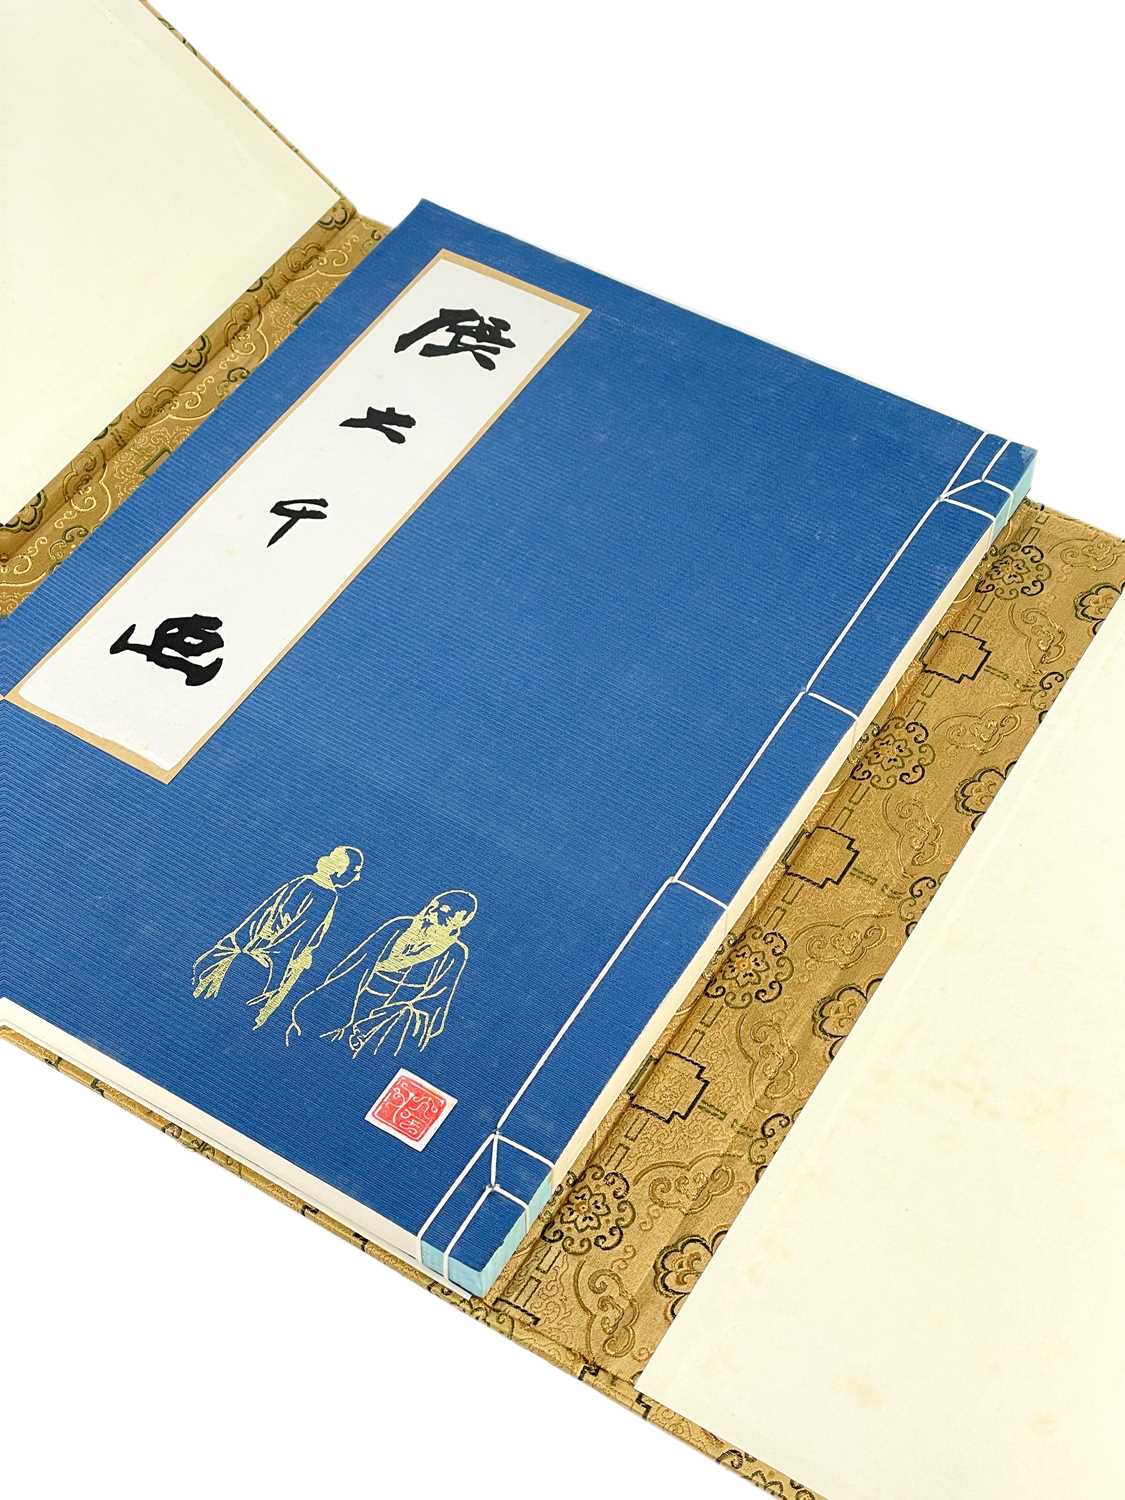 Da-Chien (Professor Chang), 'Chinese Painting' Yee Tin Tong Printing Press Ltd, Hong Kong, 1961., - Image 6 of 11